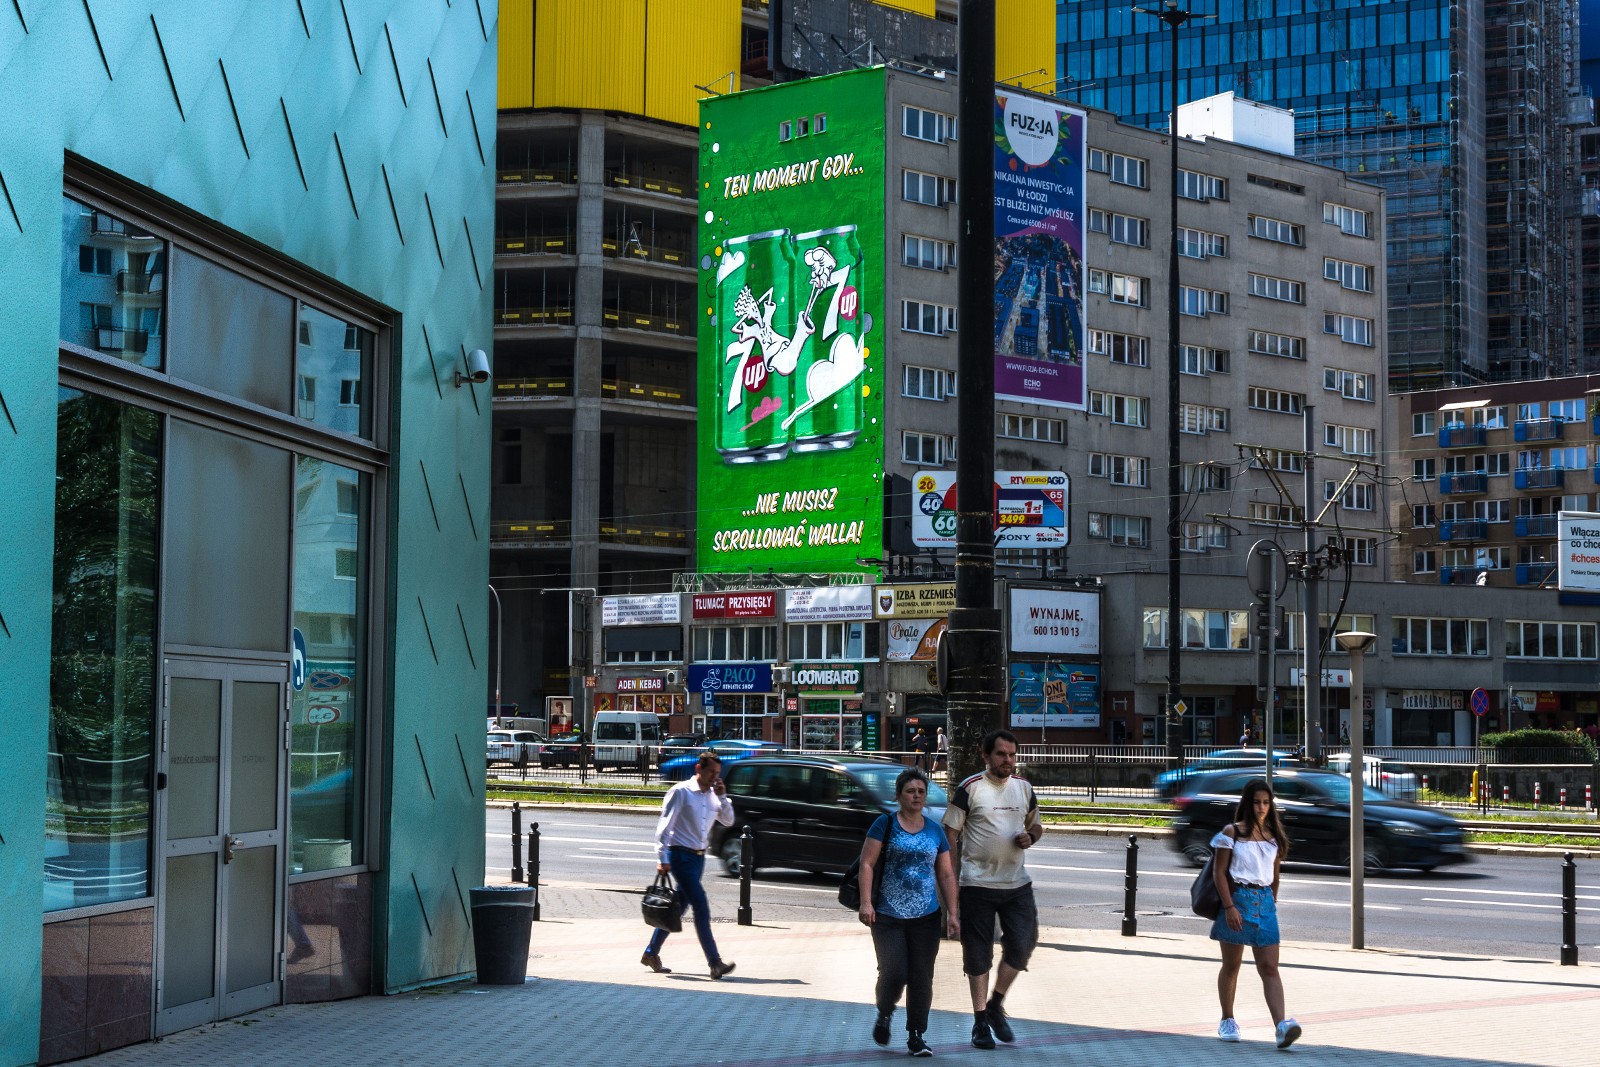 Ręcznie malowana reklama 7Up w centrum Warszawy | 7Up | Portfolio